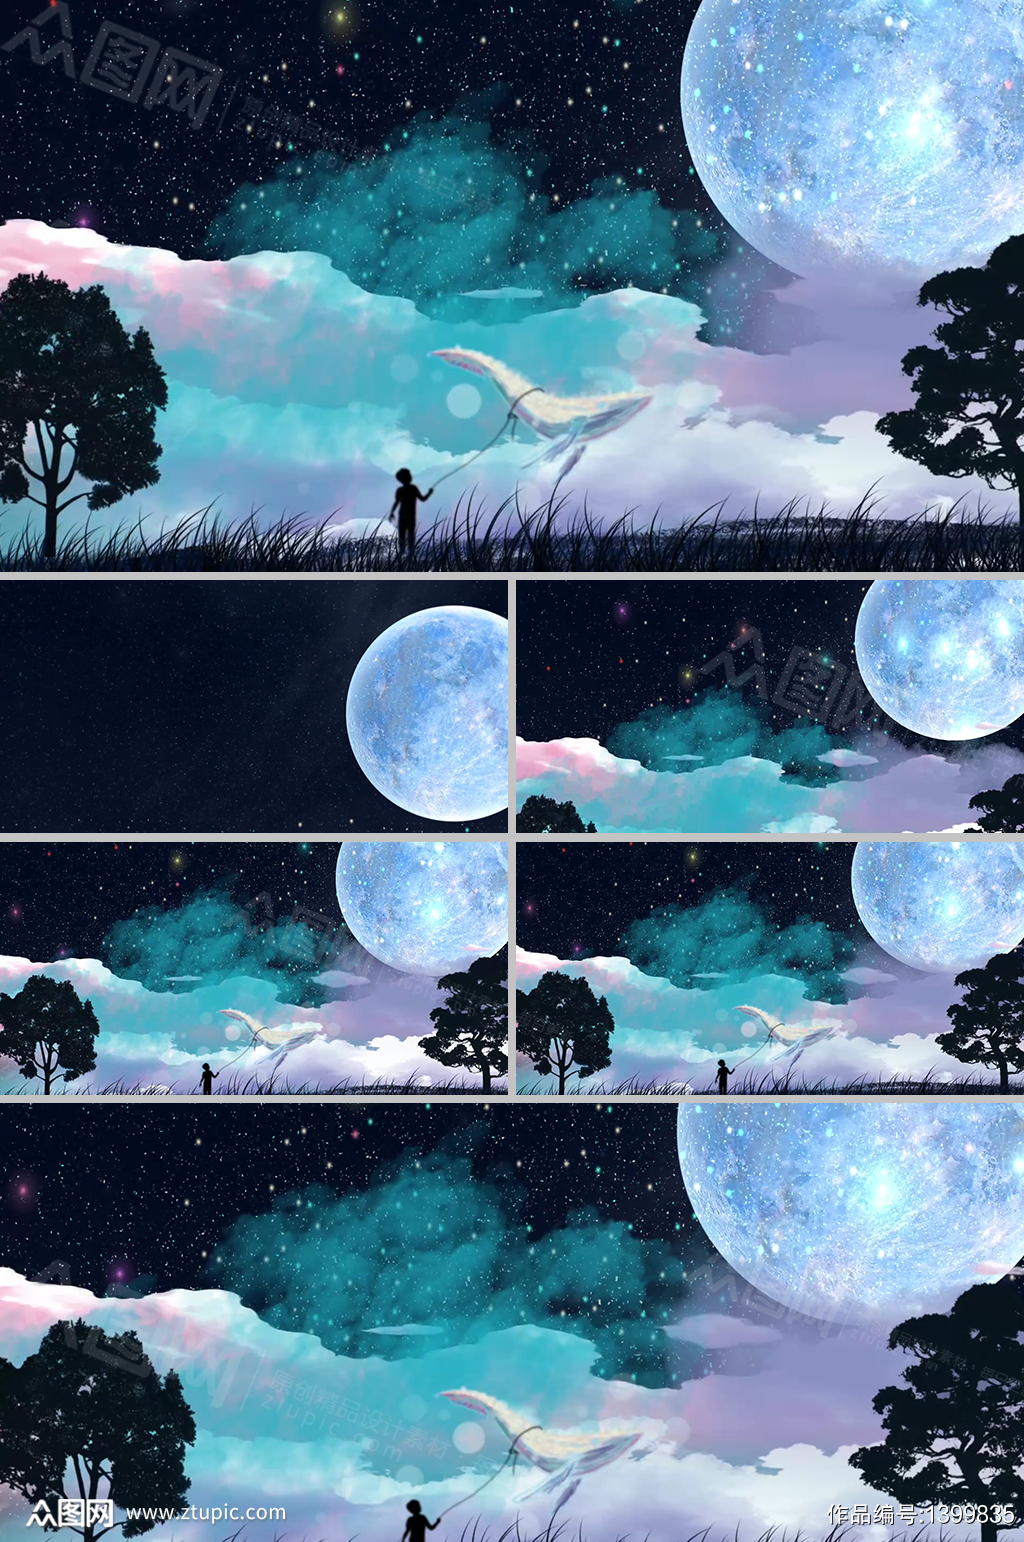 唯美浪漫星空夜月彩云童话背景视频素材 舞台背景素材下载 众图网